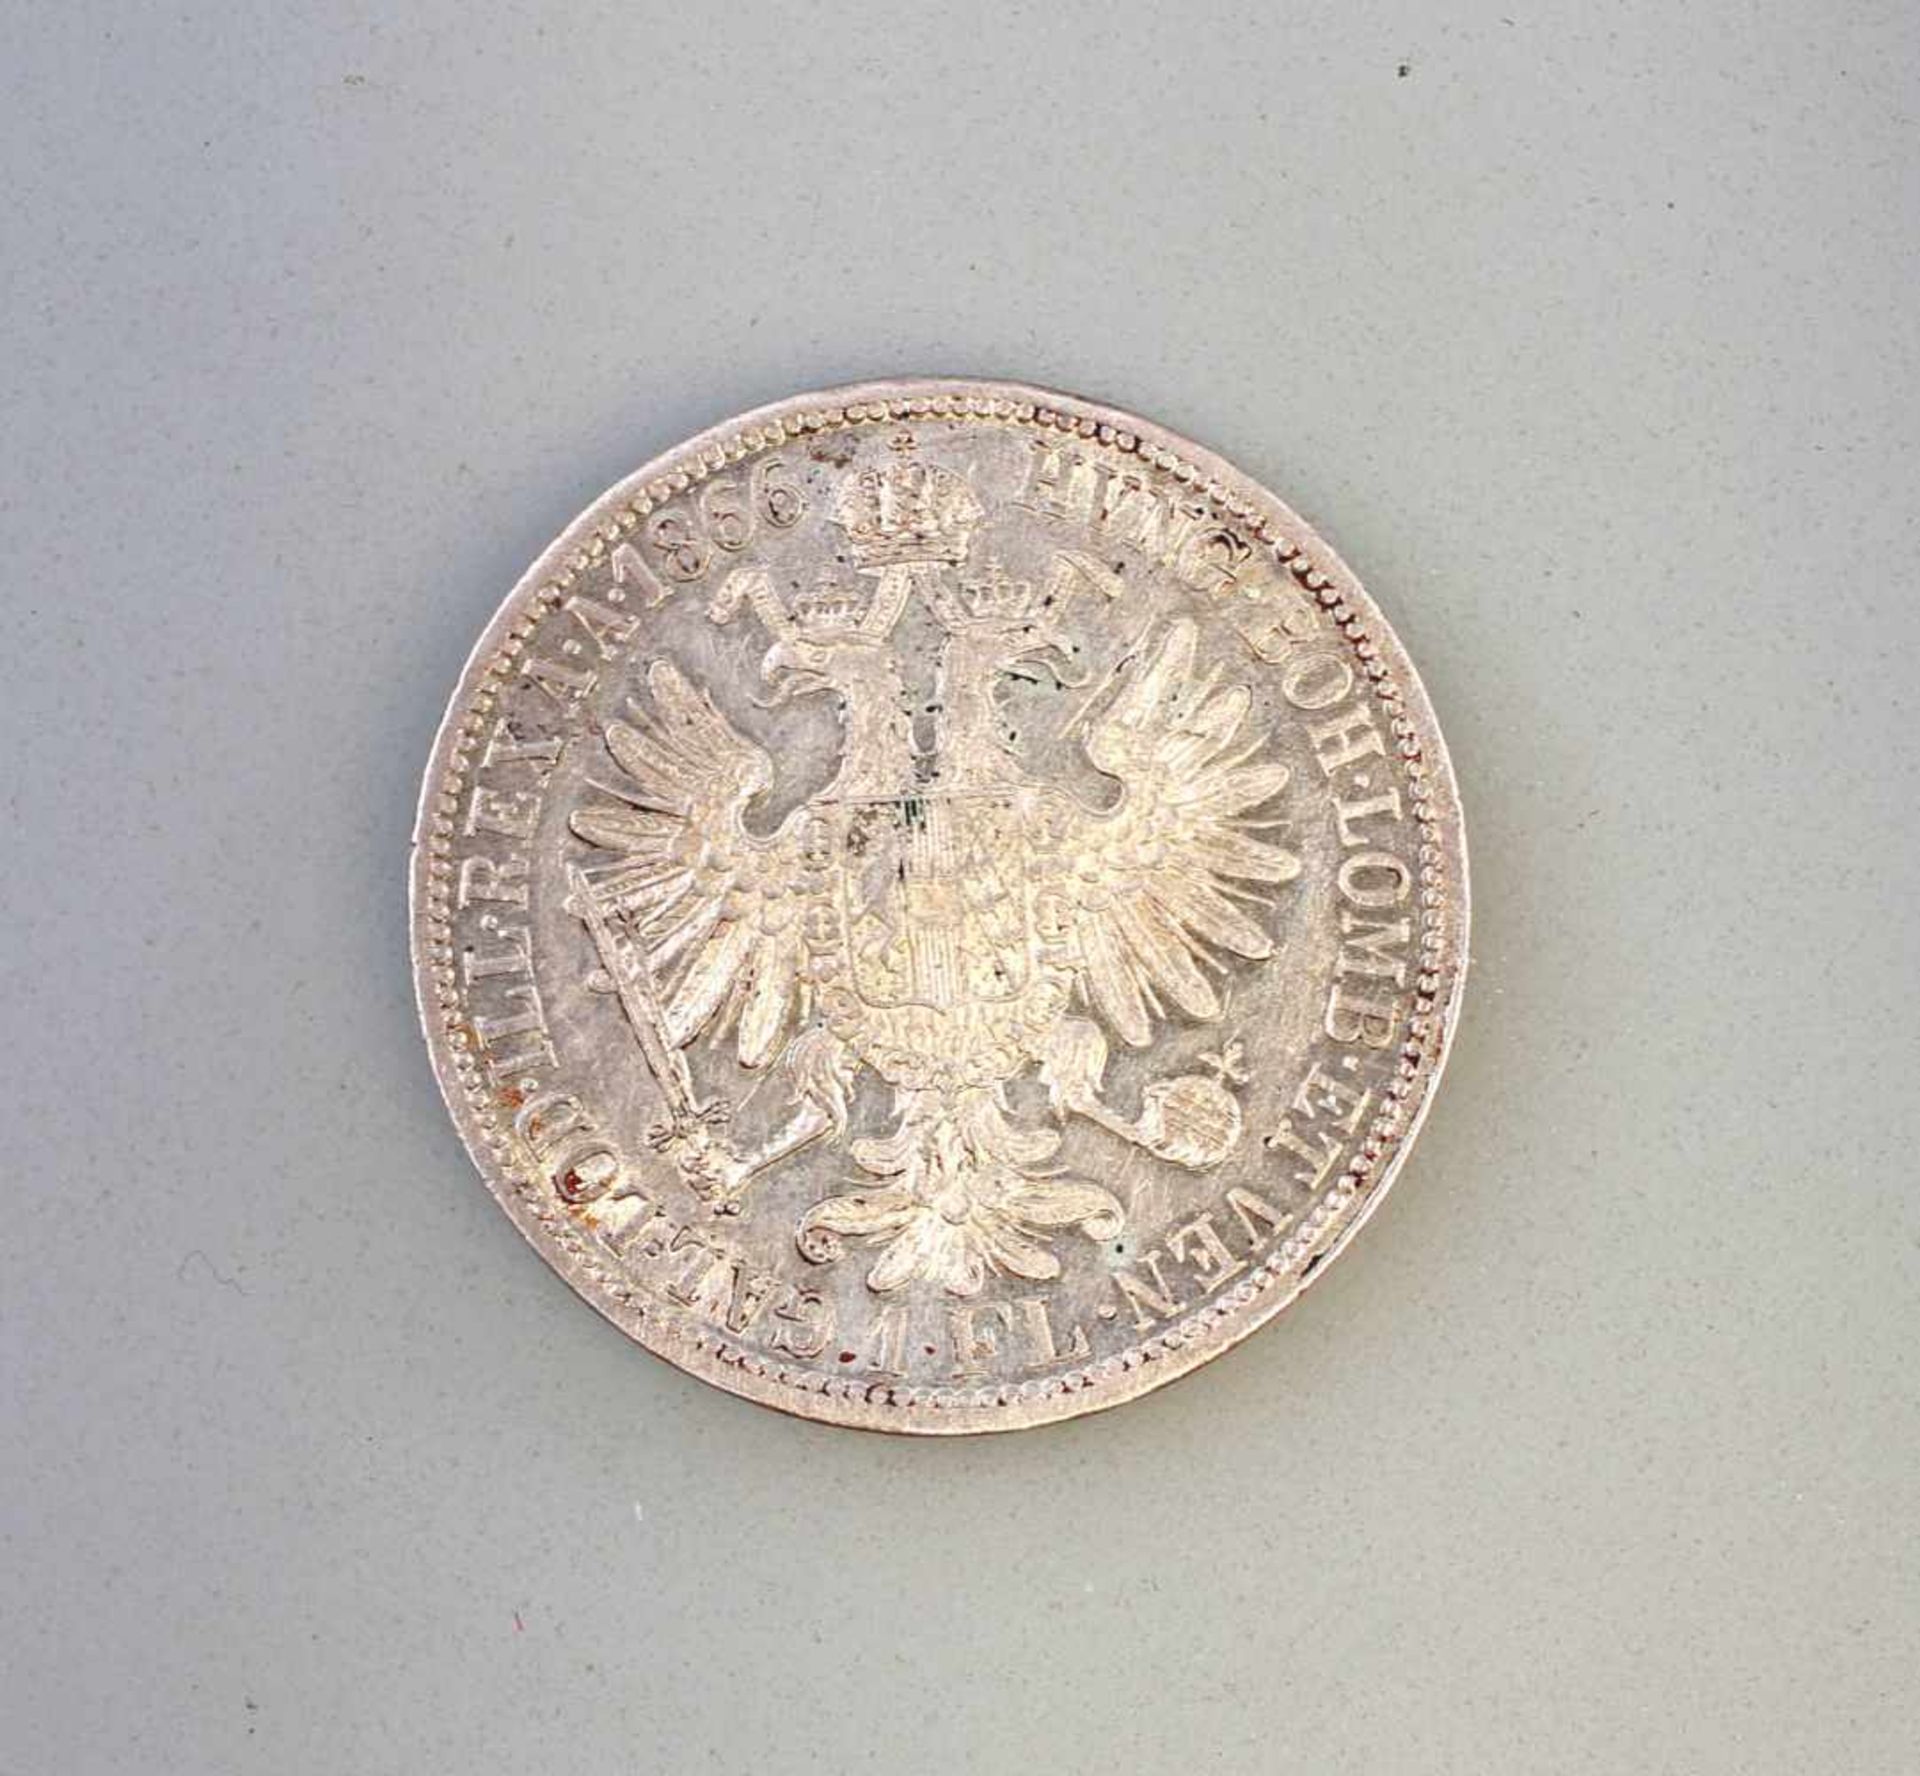 1 Florin 1866 Silber-Münze Franz Joseph I Österreich900er Silber, ca. 12 g, Zustand vz - Bild 2 aus 2